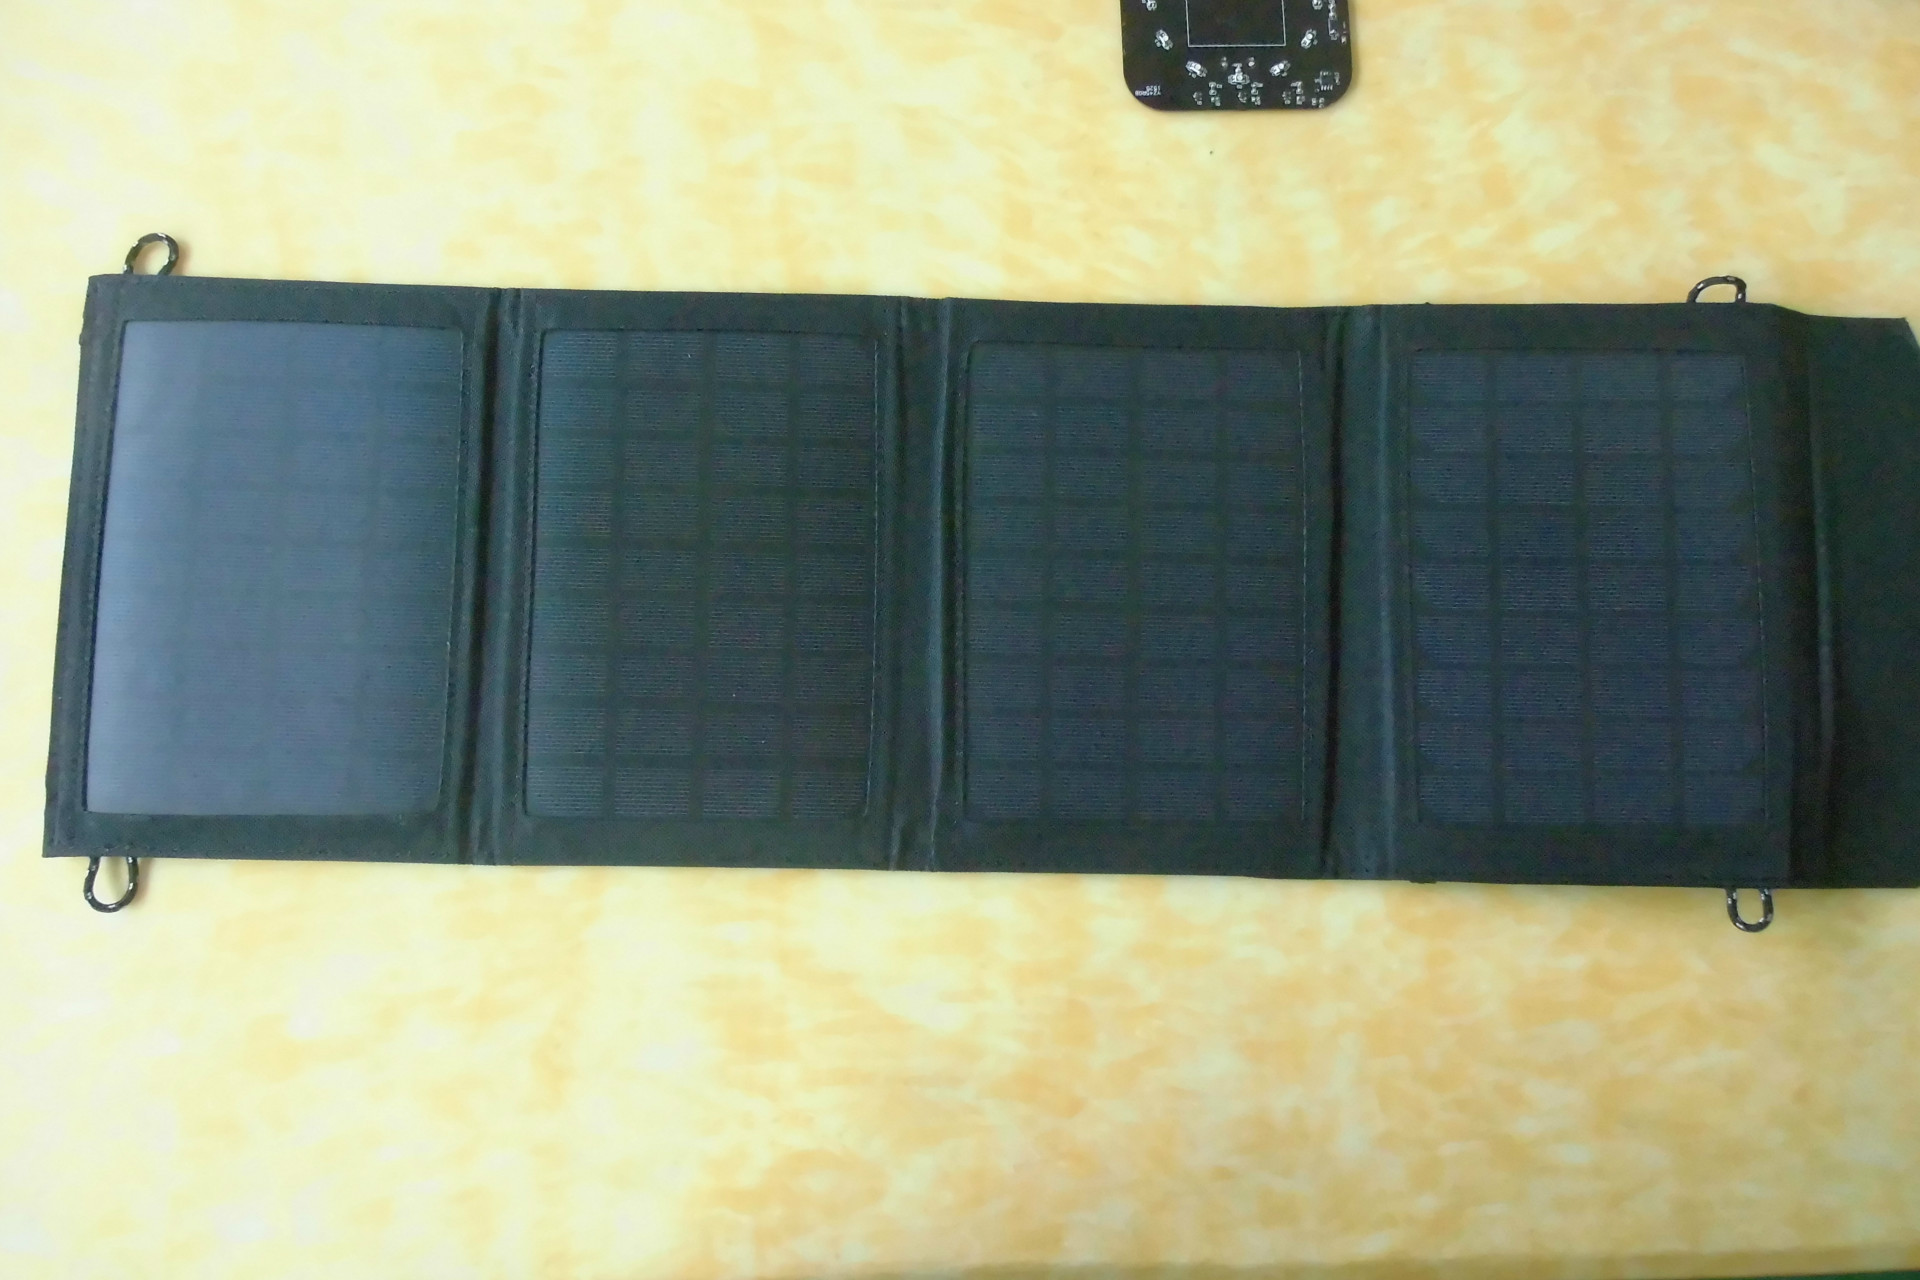 Panneau solaire en Bâche 600D - 5 V - batterie 0 sans batterie mAh - Ref 3396333 Image 7